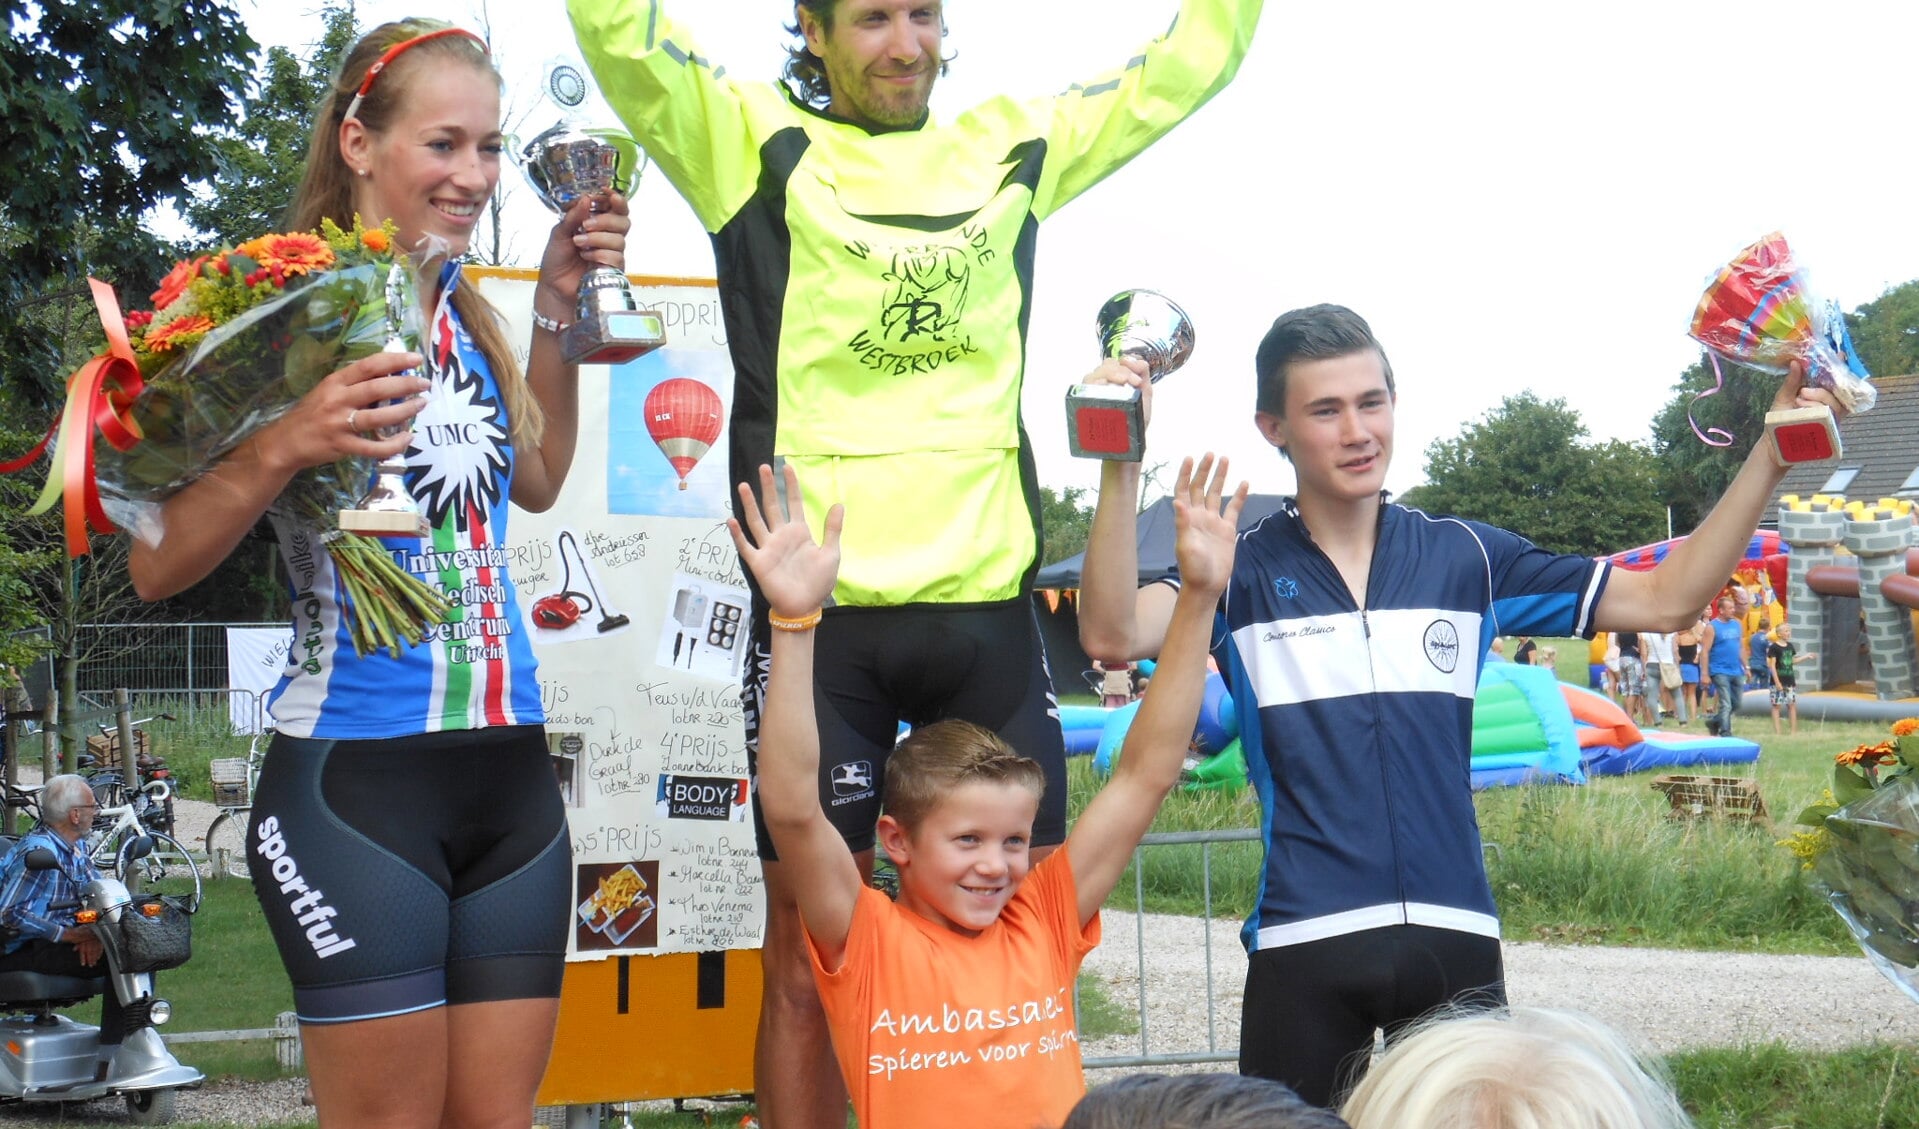 De winnaars van de Wielerronde 2015: Chantalle Timmer (dames), Robert Gaasenbeek (heren) en Erwoud van der Linden (jeugd). Zittend: Danilo Stoof (Kindambassadeur Spieren voor Spieren).